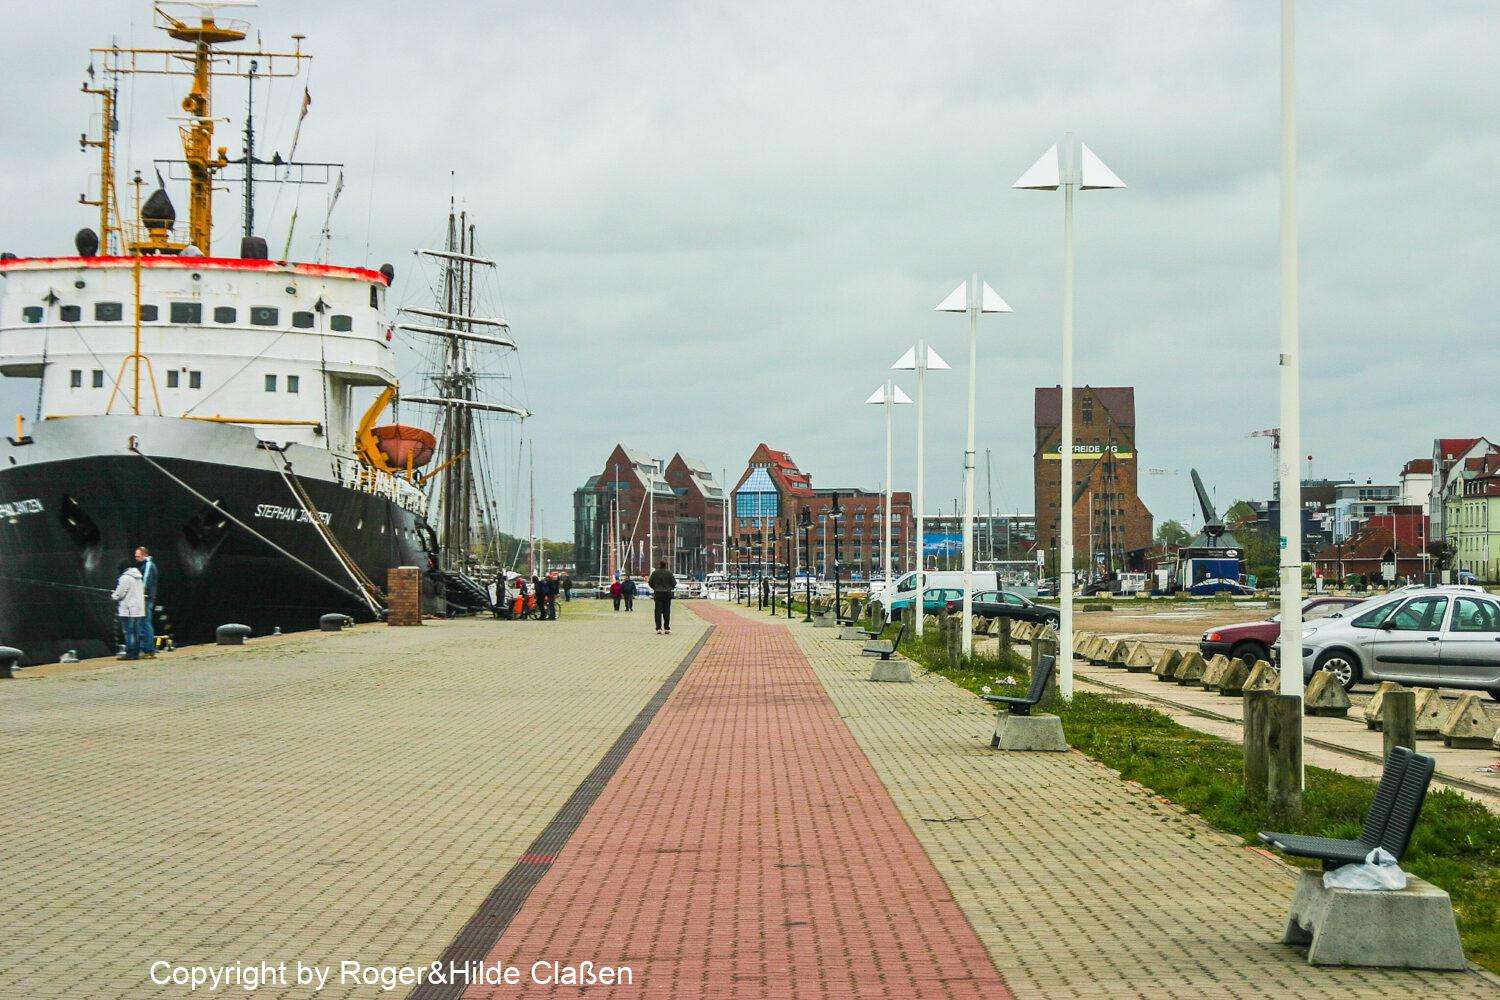 Kai im Hafen von Rostock